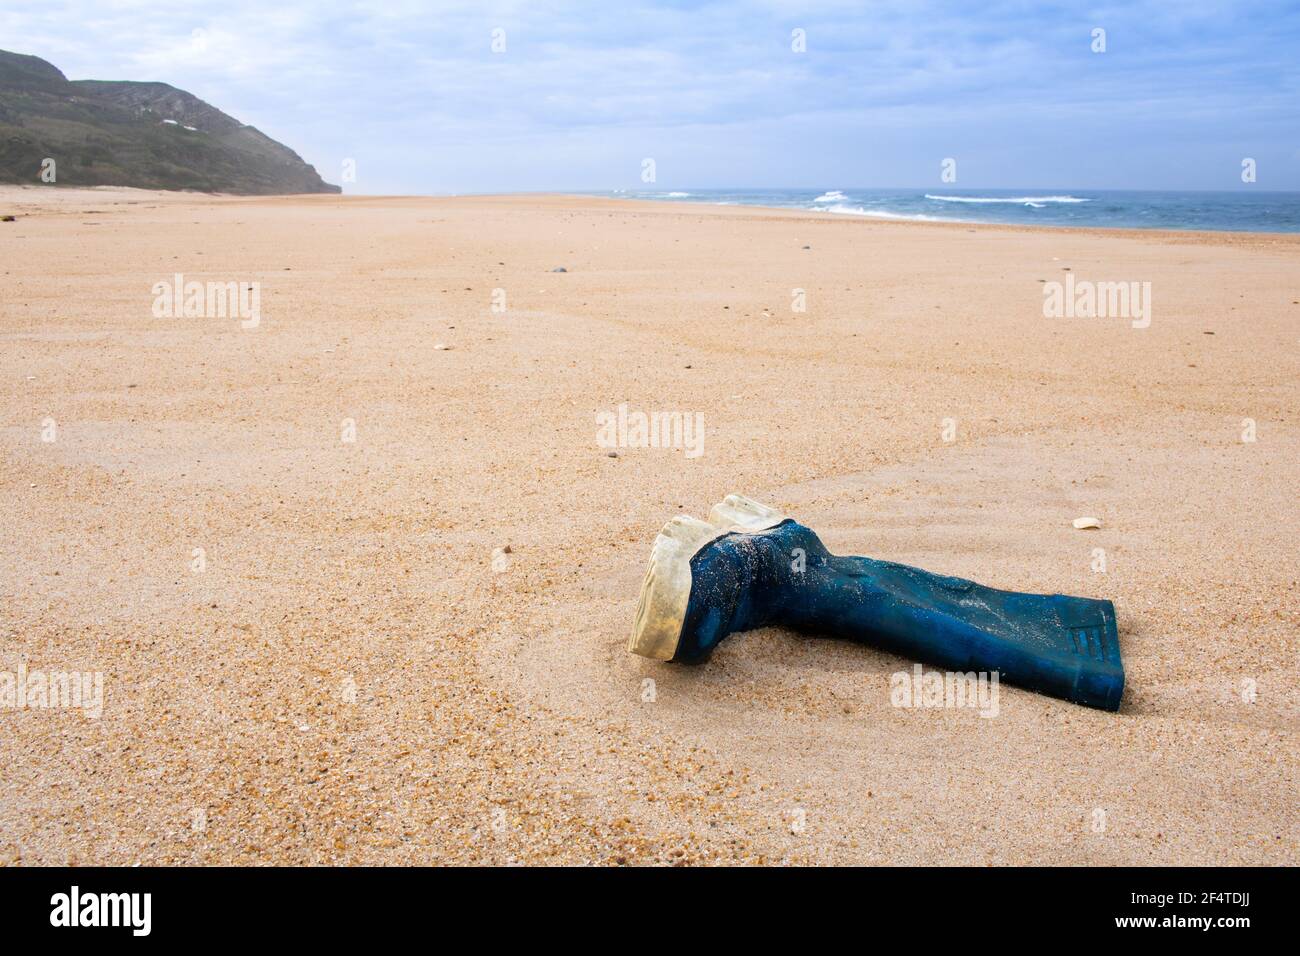 Der blaue Gummistiefel des Fischers wurde leer auf dem Sand gelassen Strand mit Meer und Berg im Hintergrund Stockfoto